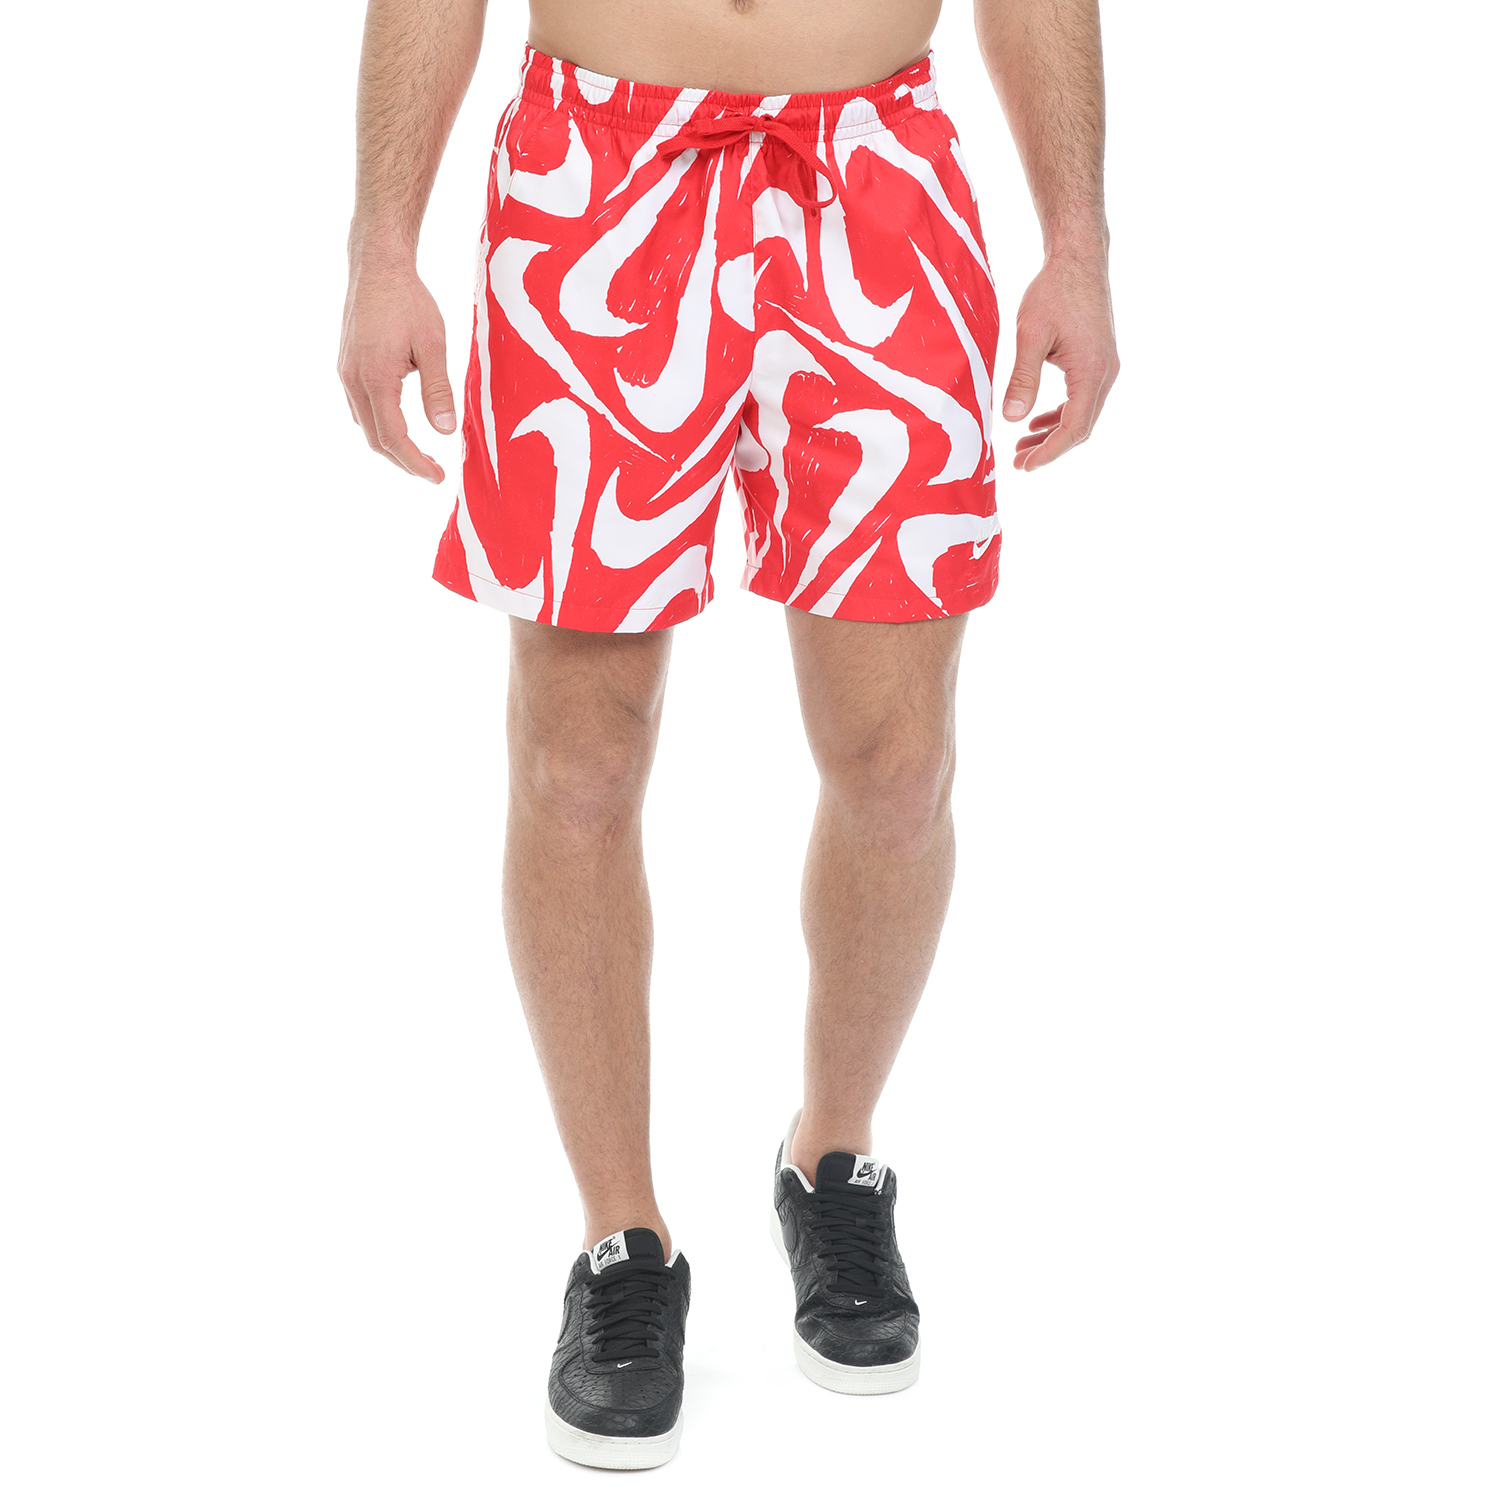 Ανδρικά/Ρούχα/Σορτς-Βερμούδες/Αθλητικά NIKE - Ανδρικό μαγιό σορτς από τη NIKE NSW CE SHORT WVN FLOW AOP2 κόκκινο λευκό